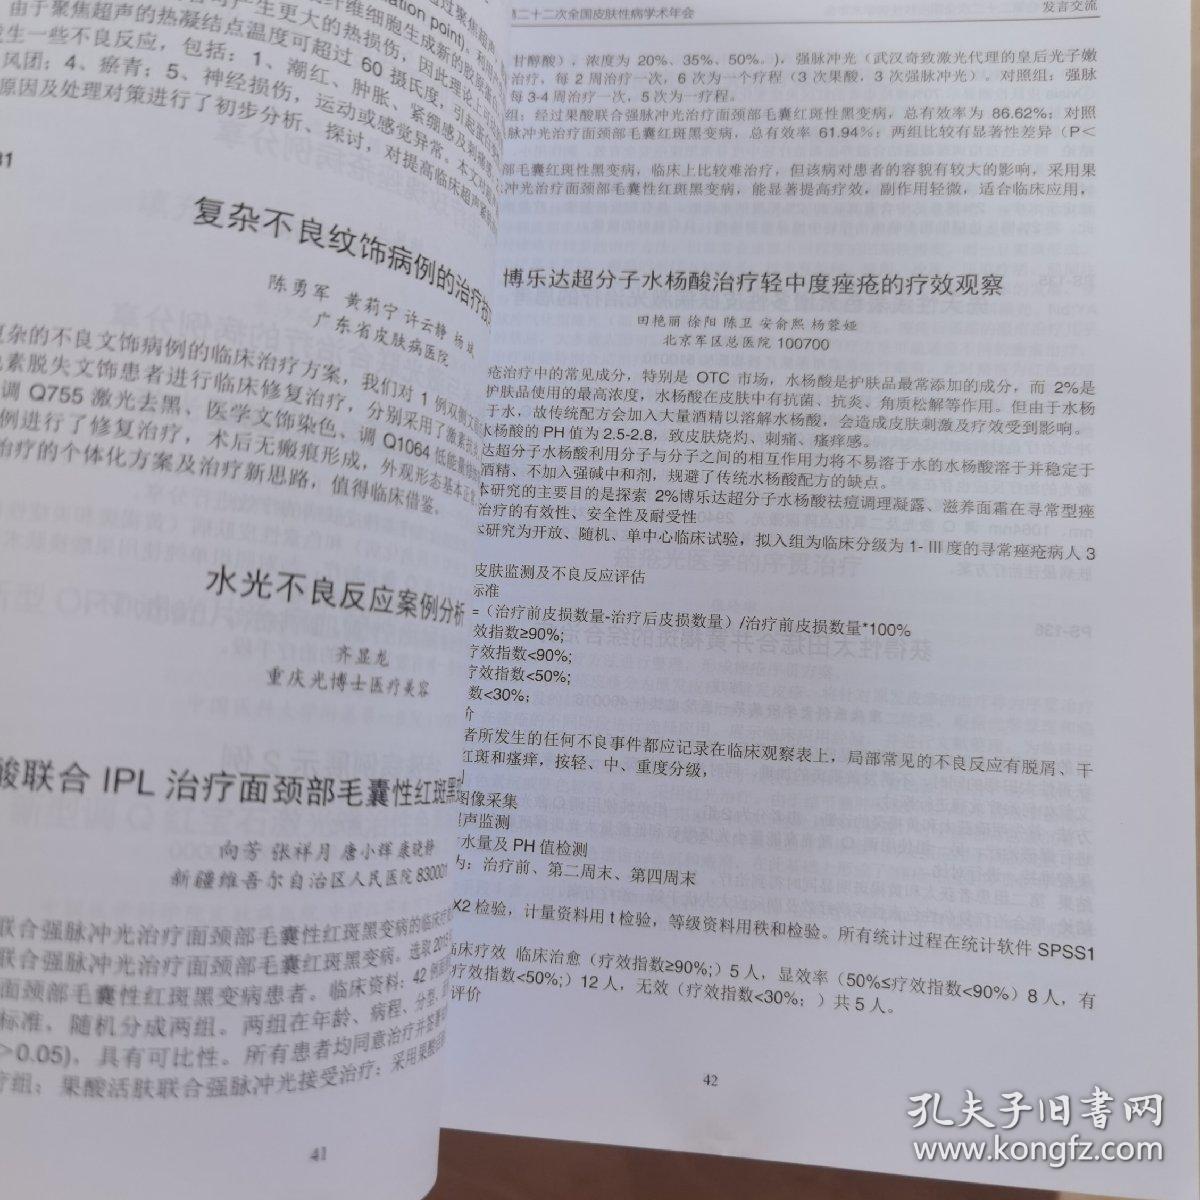 中华医学会二十二次全国皮肤性病学术年会 论文汇编